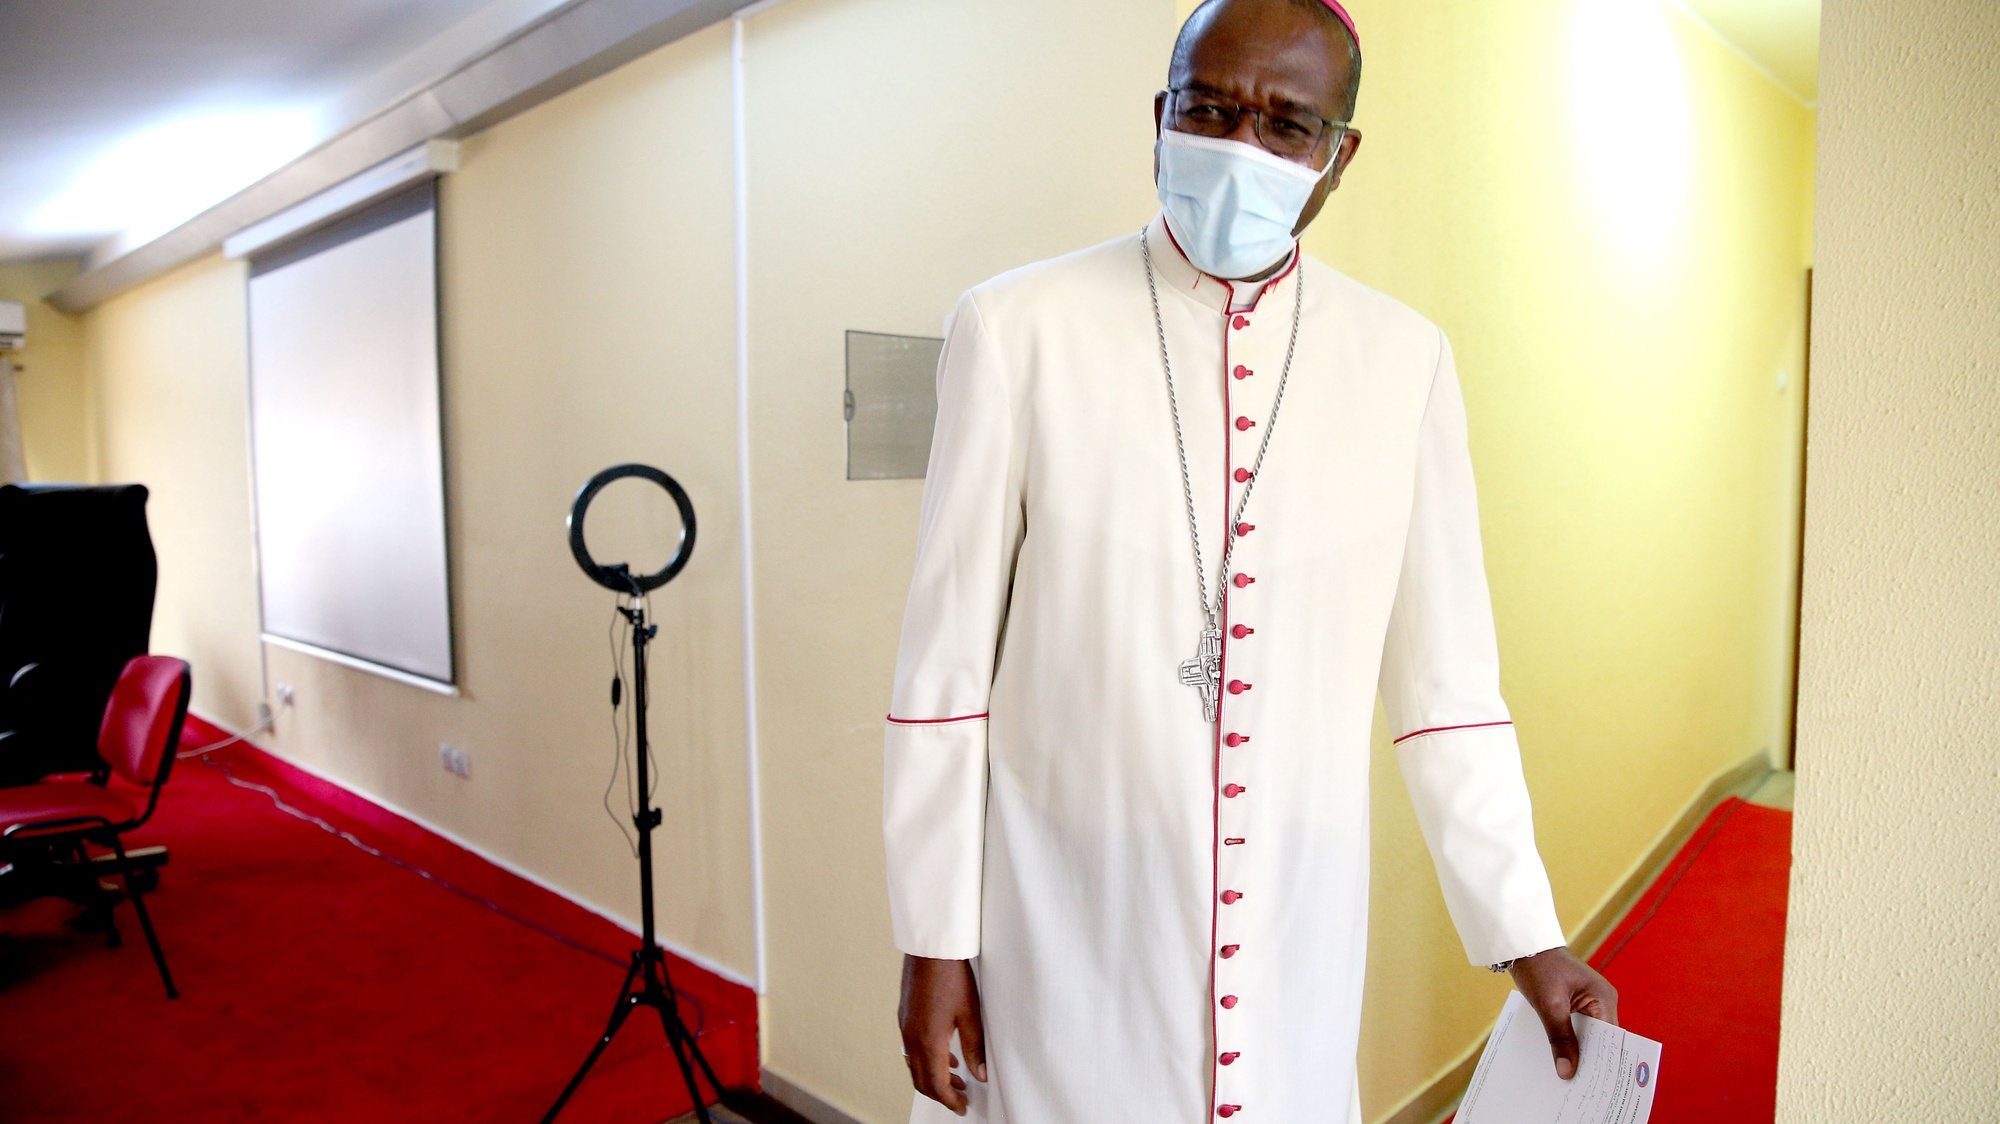 O bispo D. José Manuel Imbamba, o novo presidente da CEAST (Conferência Episcopal de Angola e São Tomé), após o encerramento da assembleia da CEAST, Luanda, Angola, 11 de outubro de 2021. AMPE ROGÉRIO/LUSA